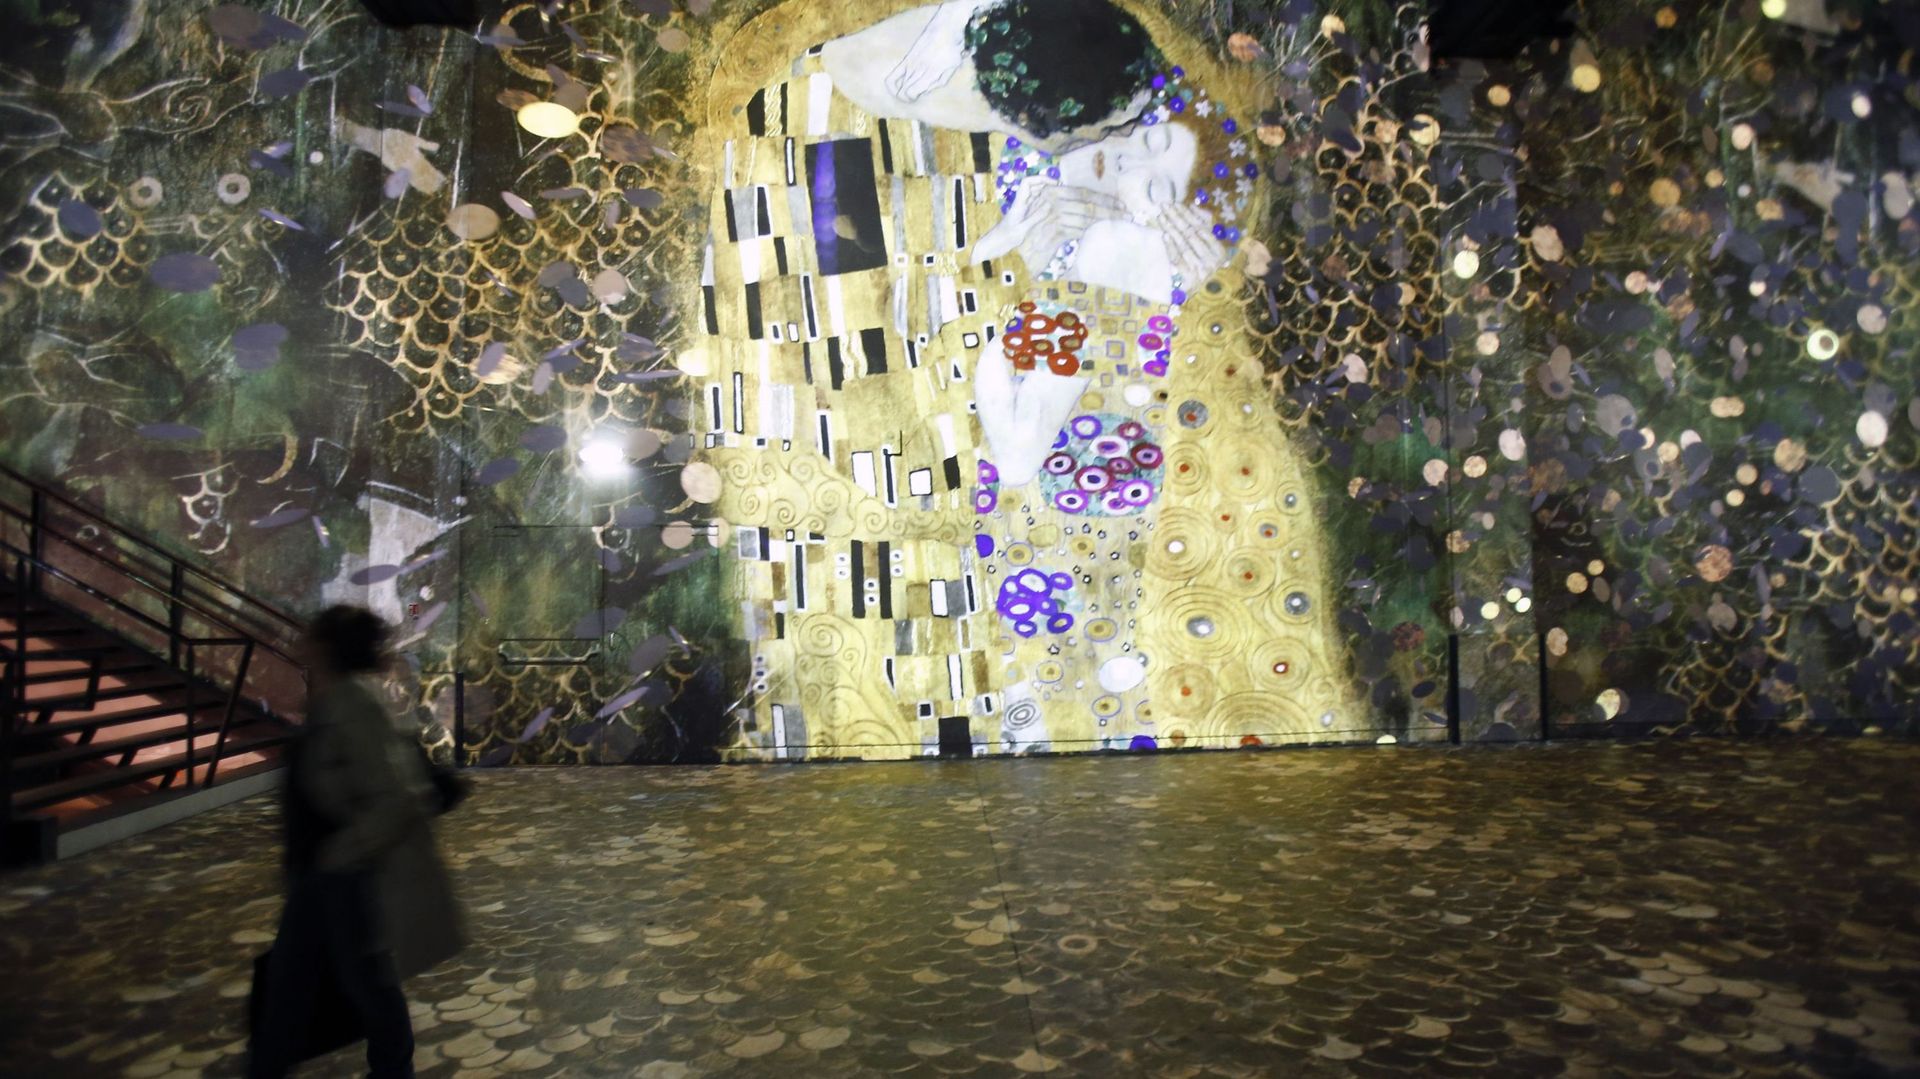 Immergez-vous dans l’œuvre dorée de Gustav Klimt